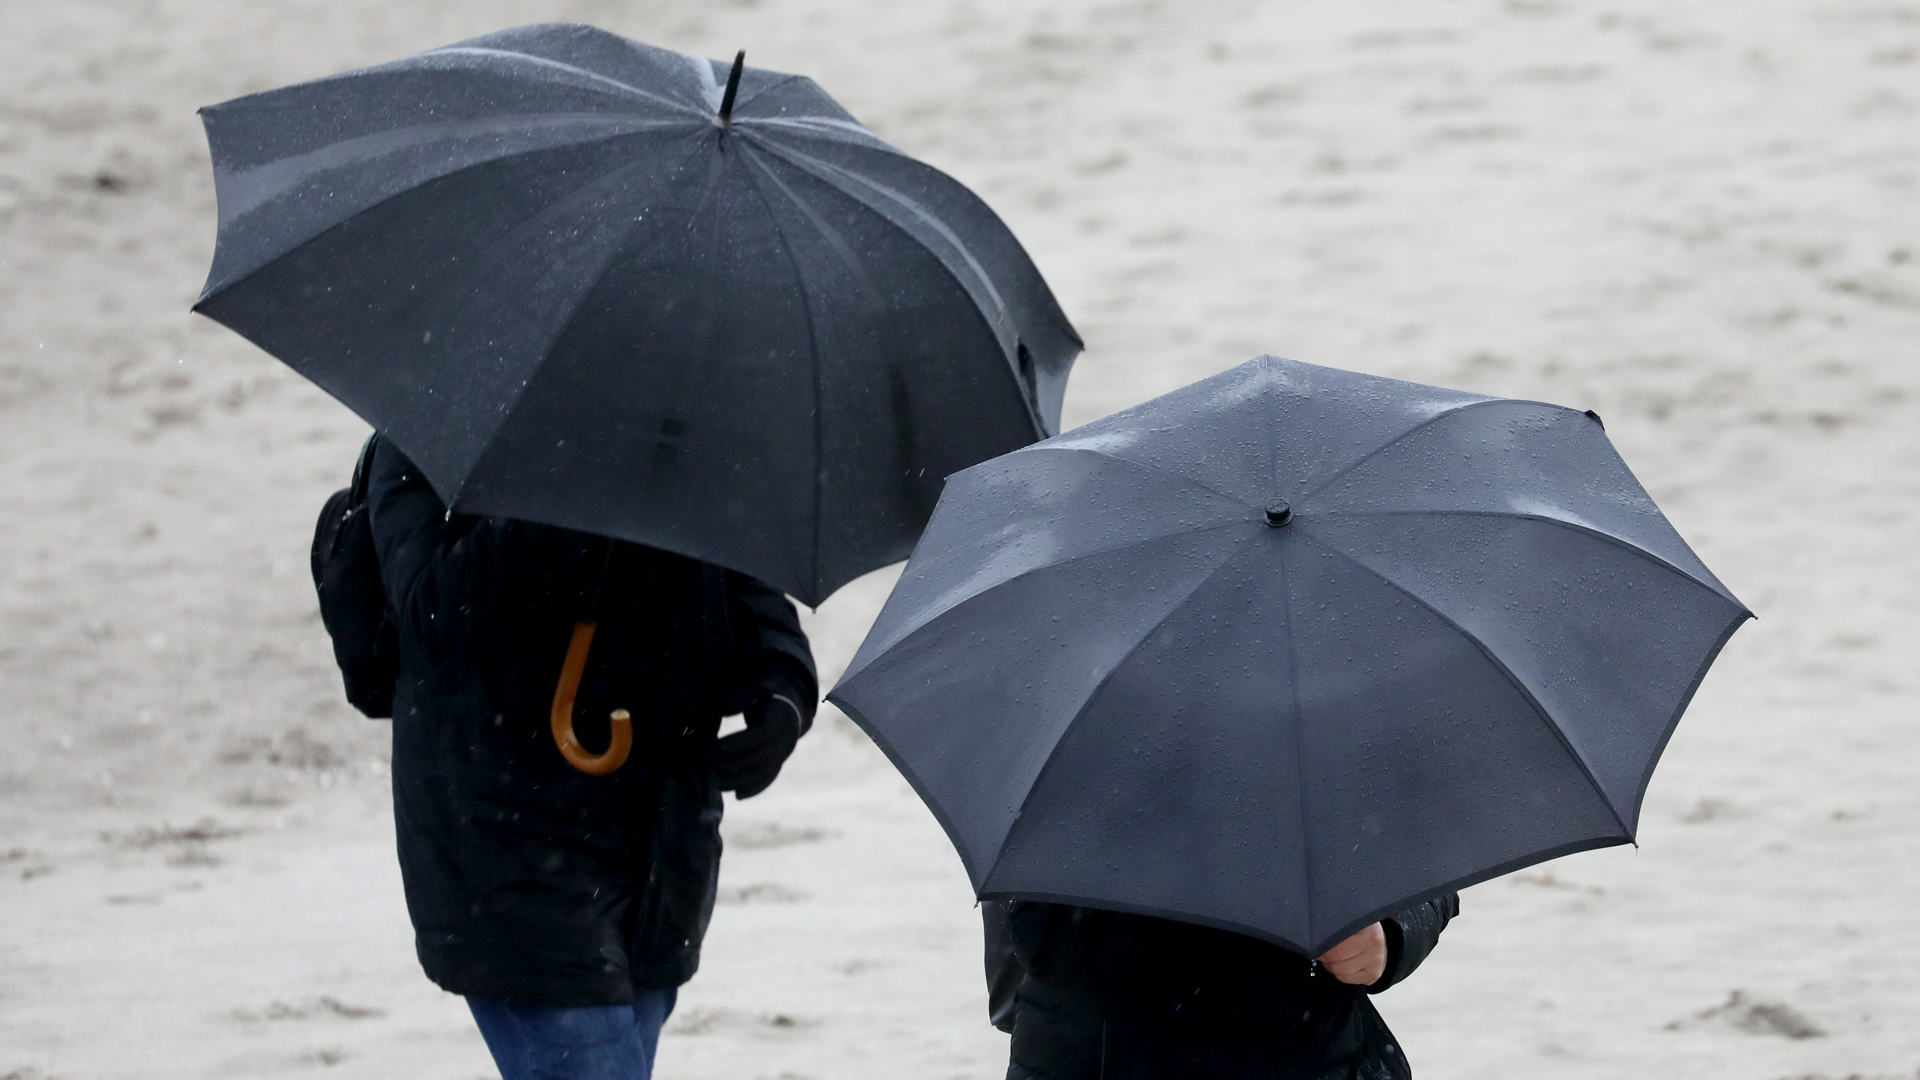  Spaziergänger sind mit wetterfester Kleidung und Regenschirmen bei Regen und Wind am Ostseestrand unterwegs. | dpa